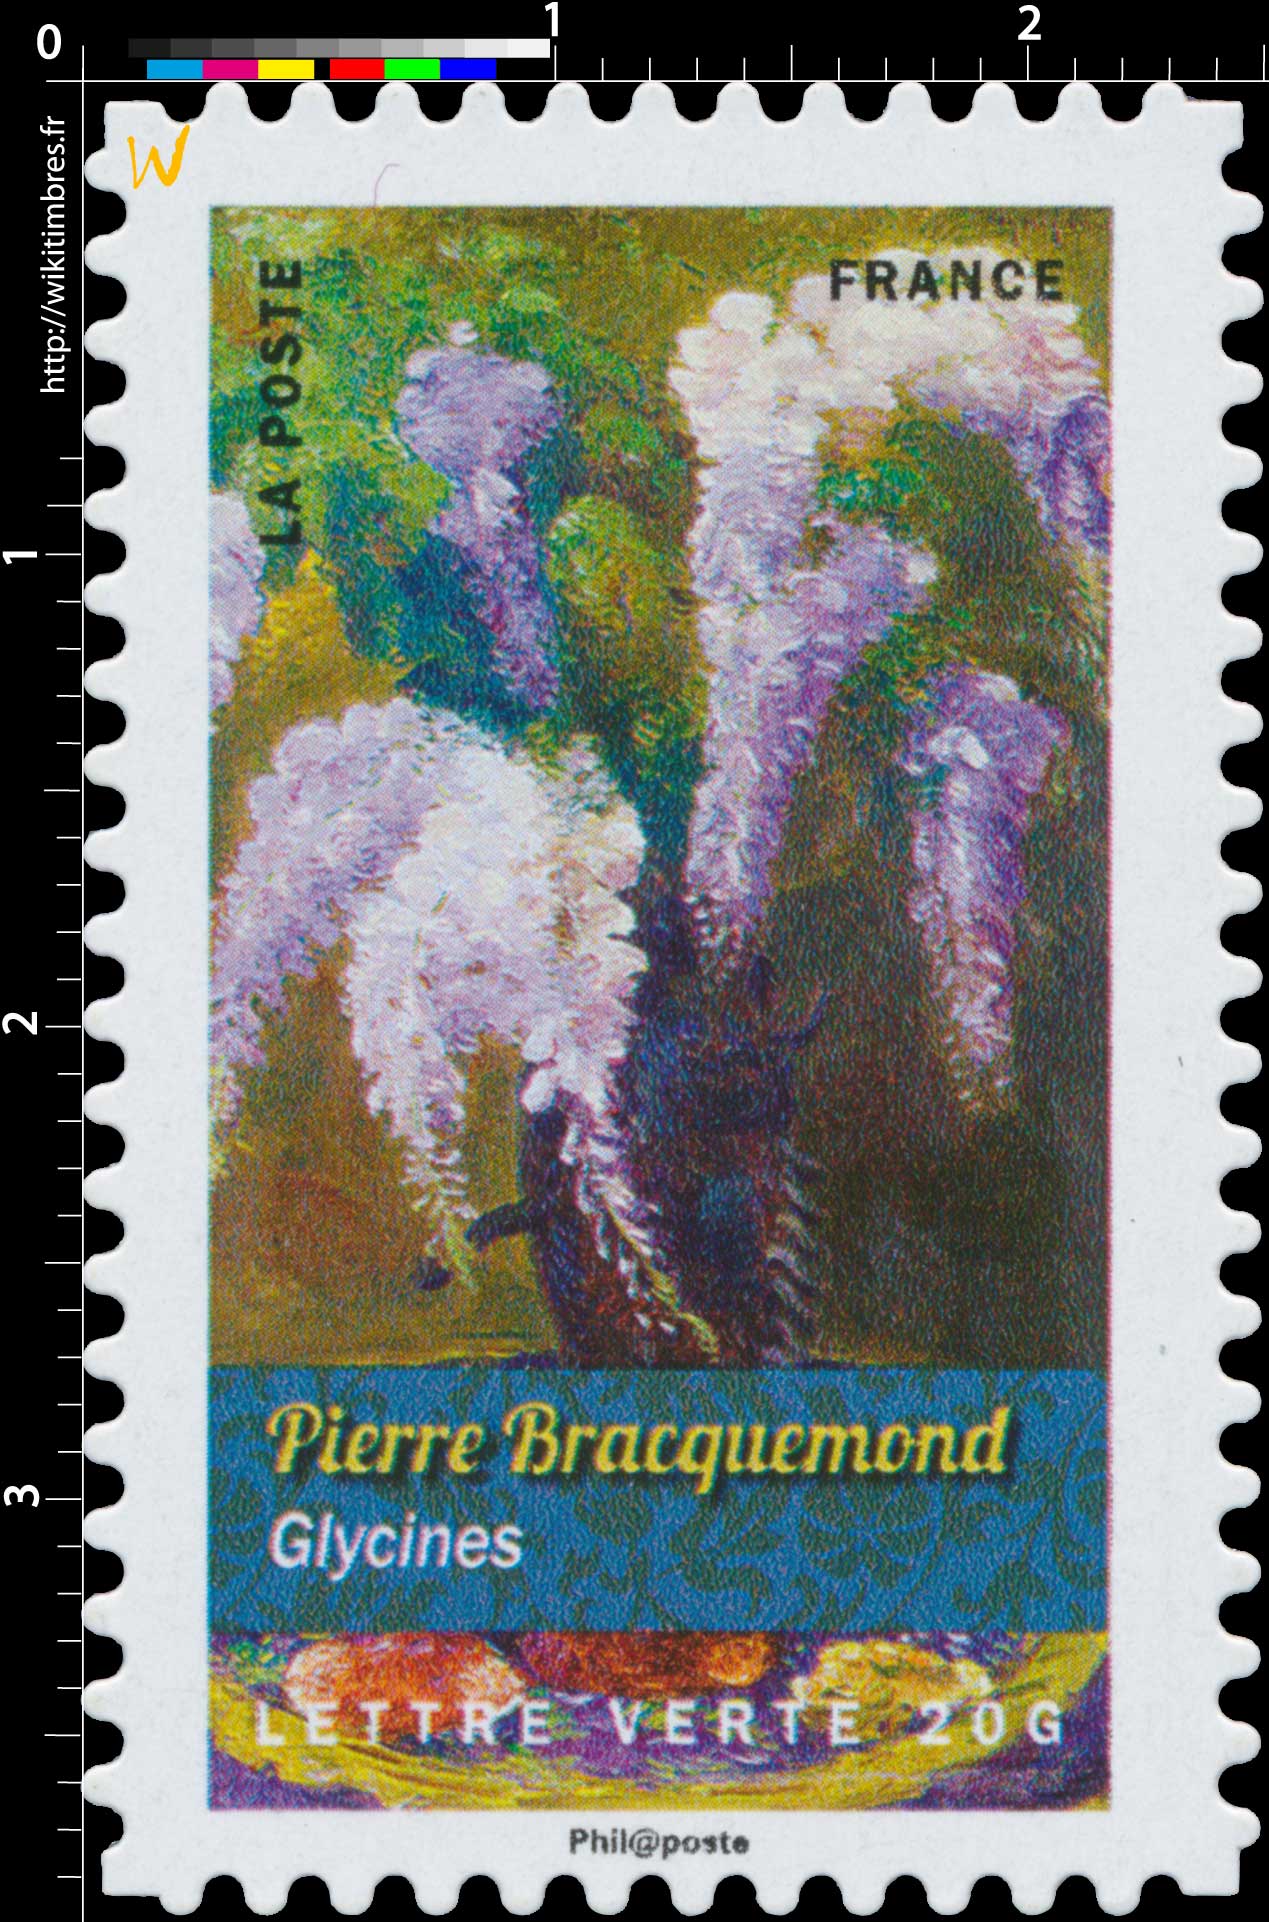 2015 Pierre Bracquemond - Glycines